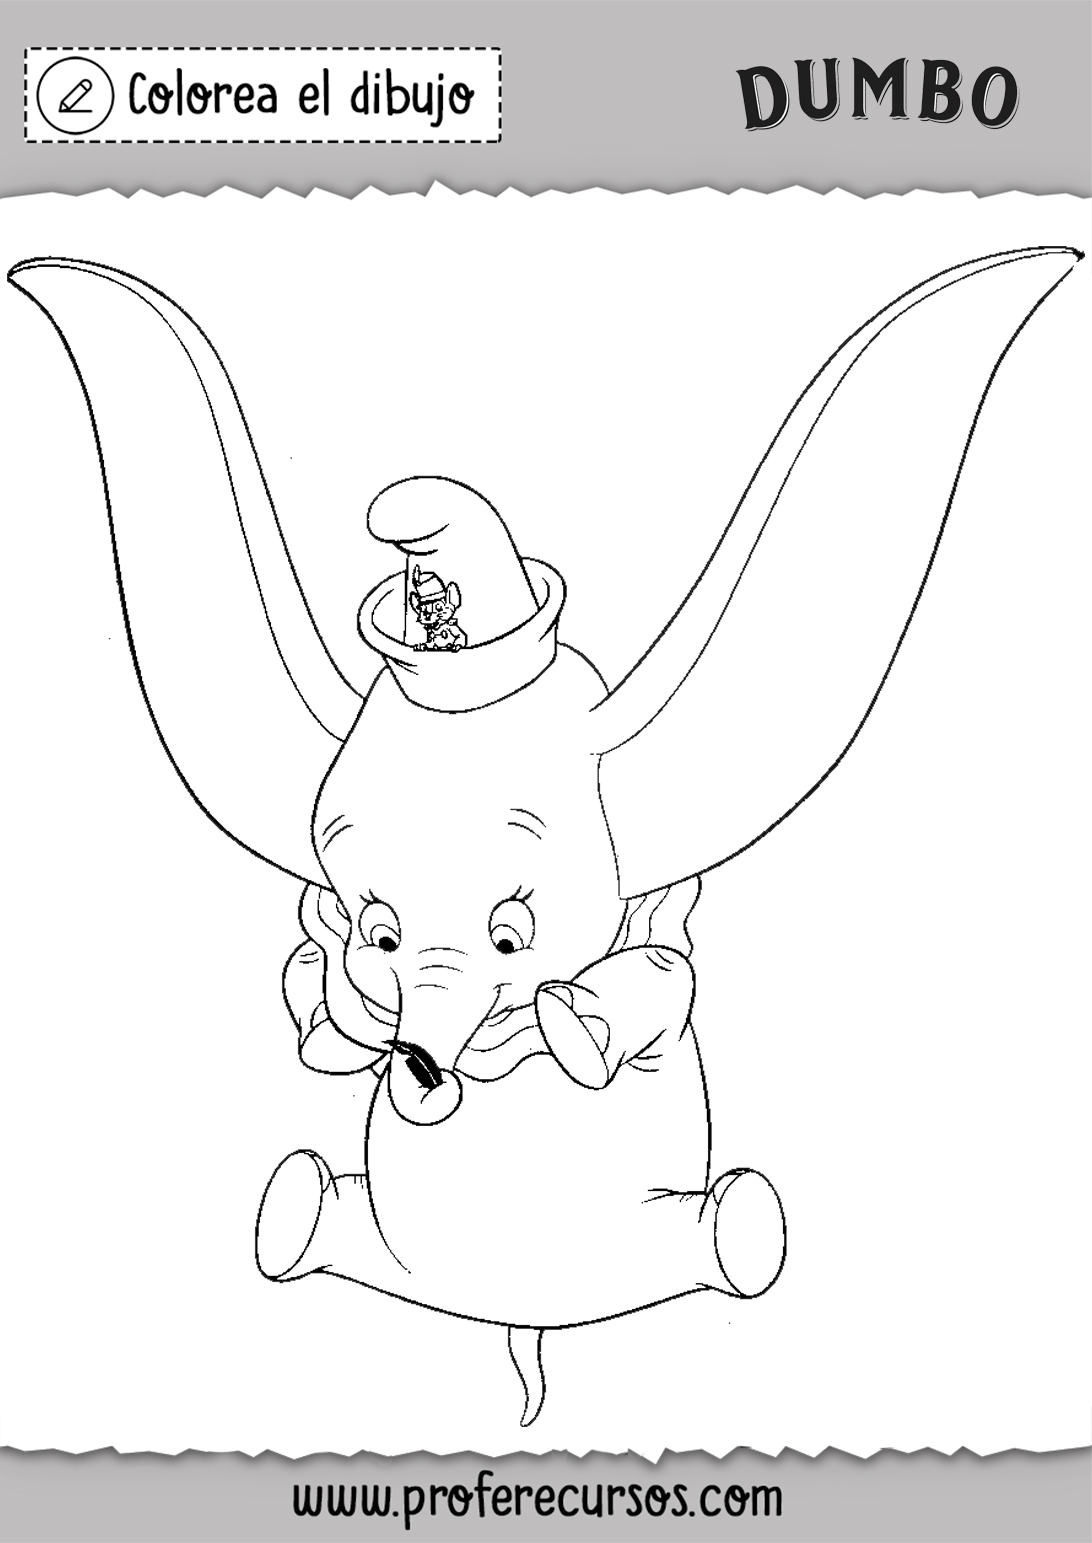 Colorear Dibujo de Dumbo